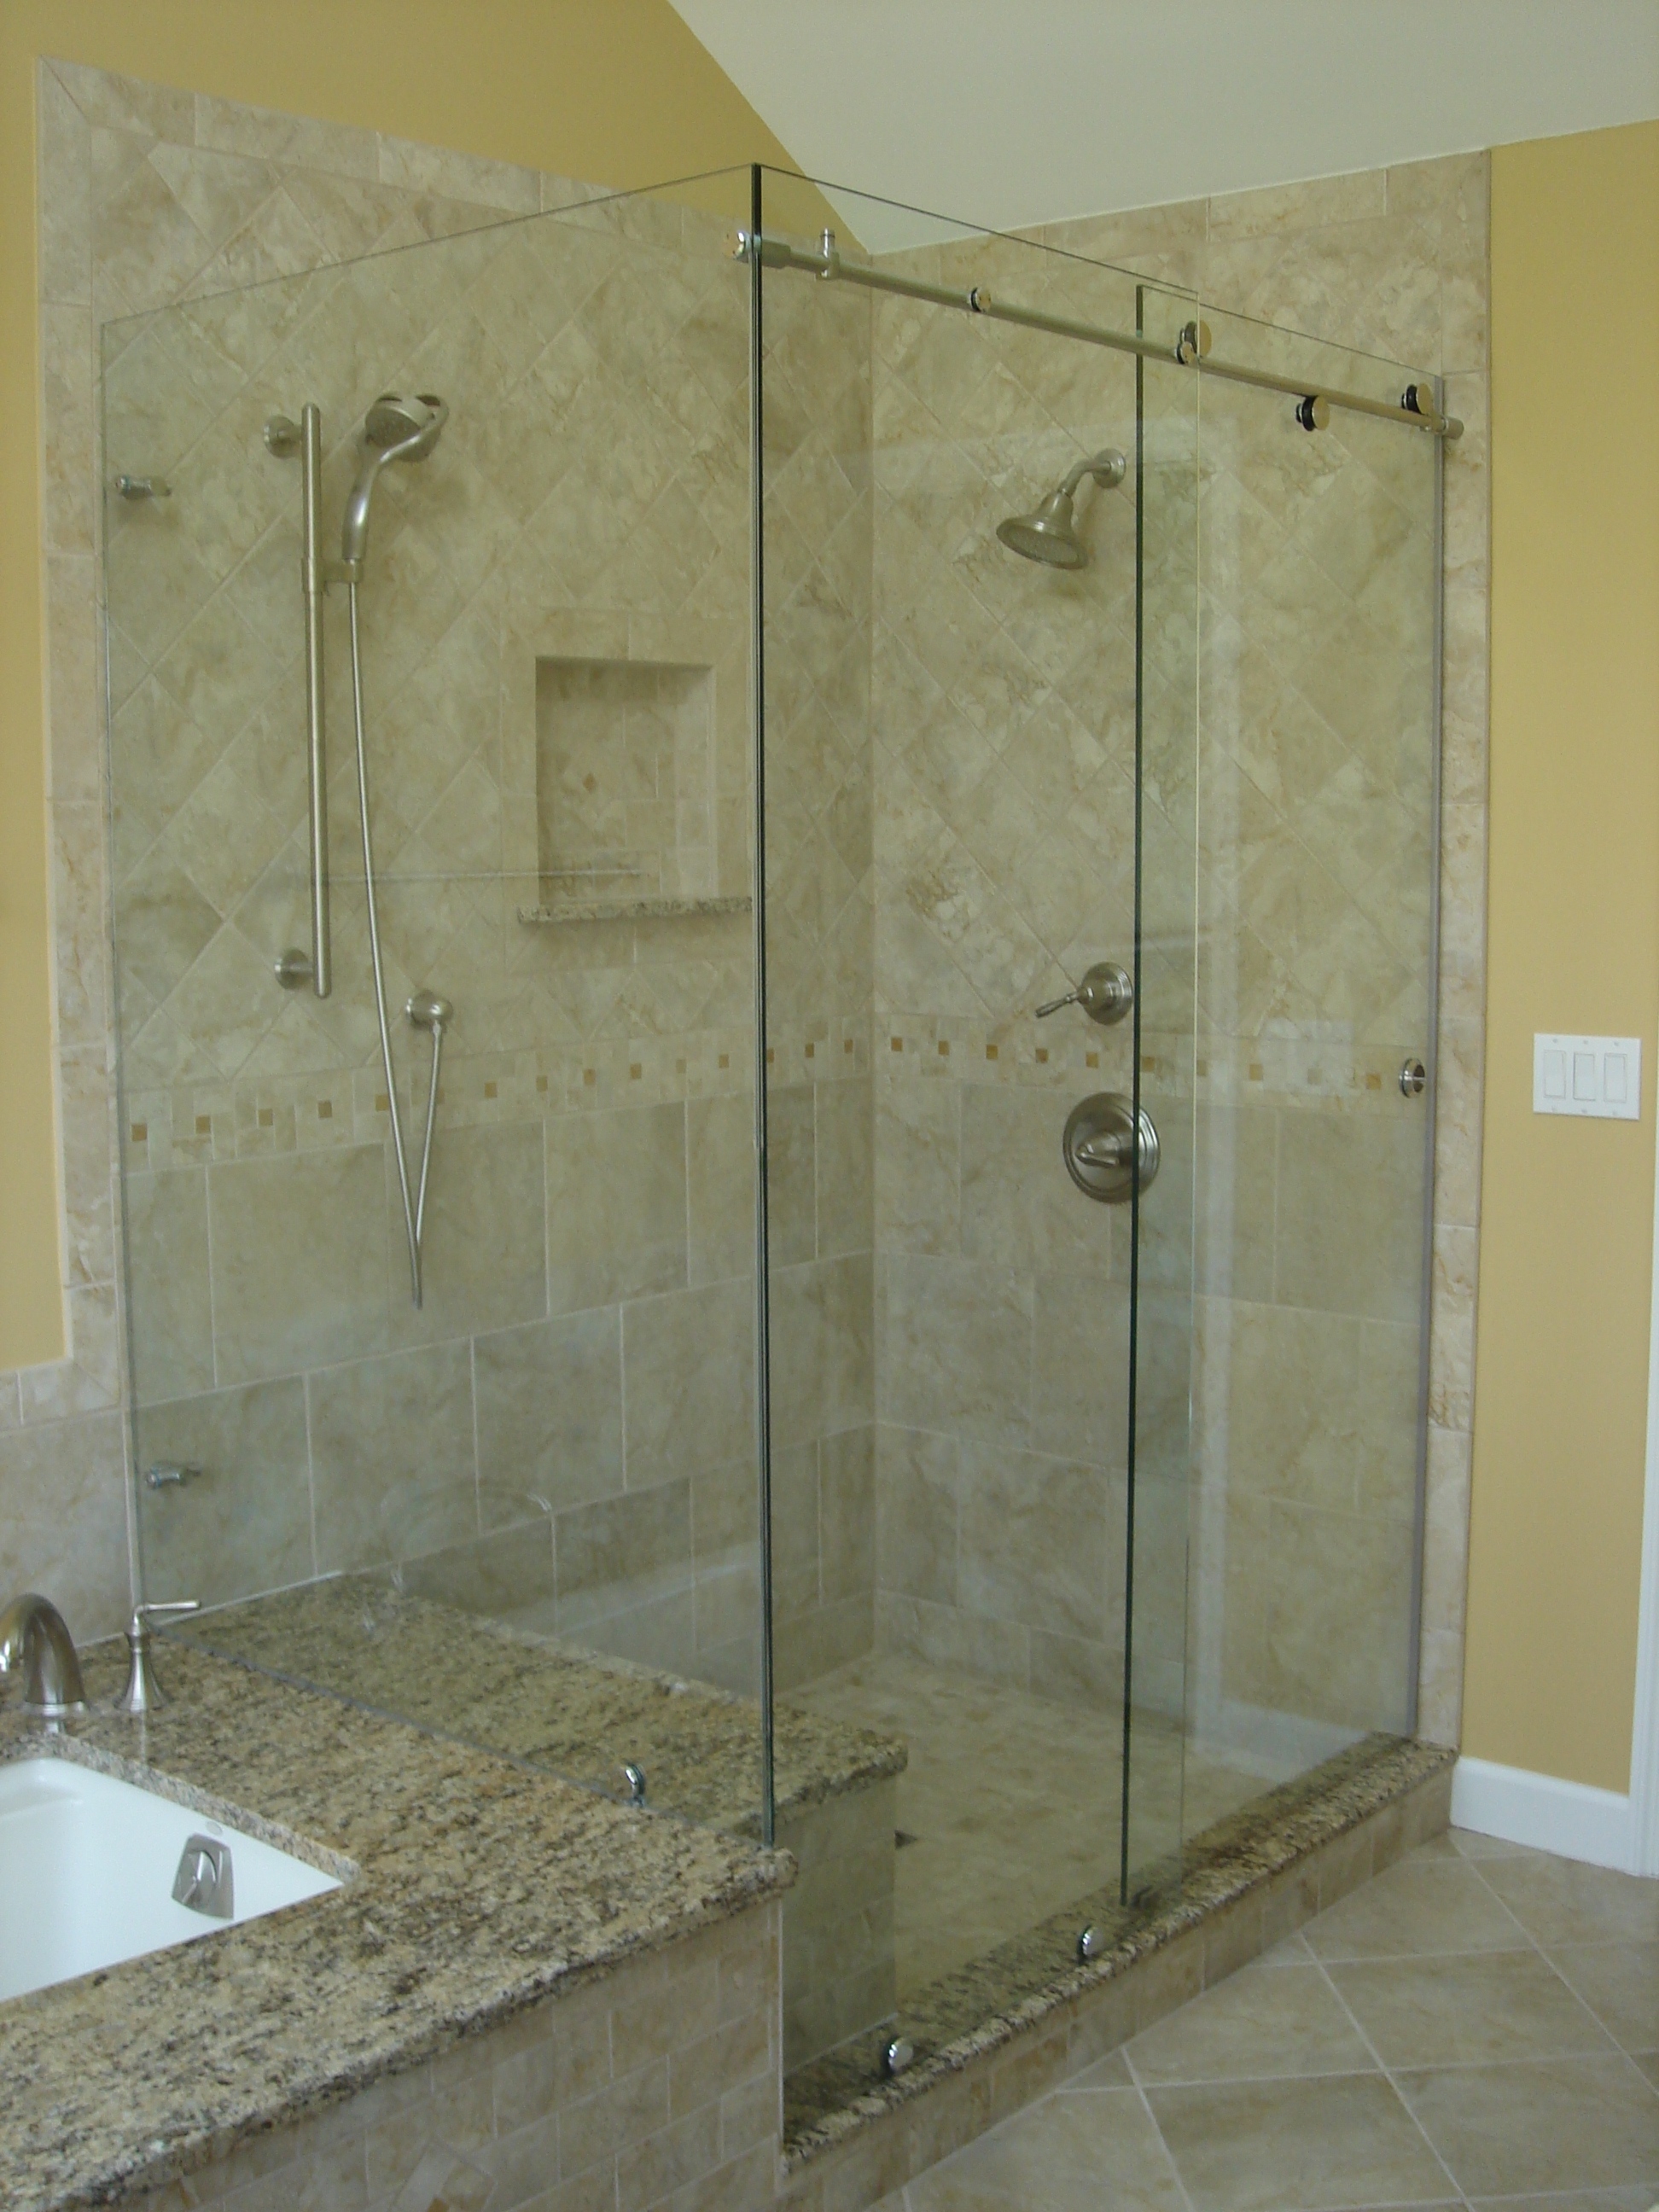 Fixed Panel Sliding Shower DoorFixed Panel Sliding Shower Door